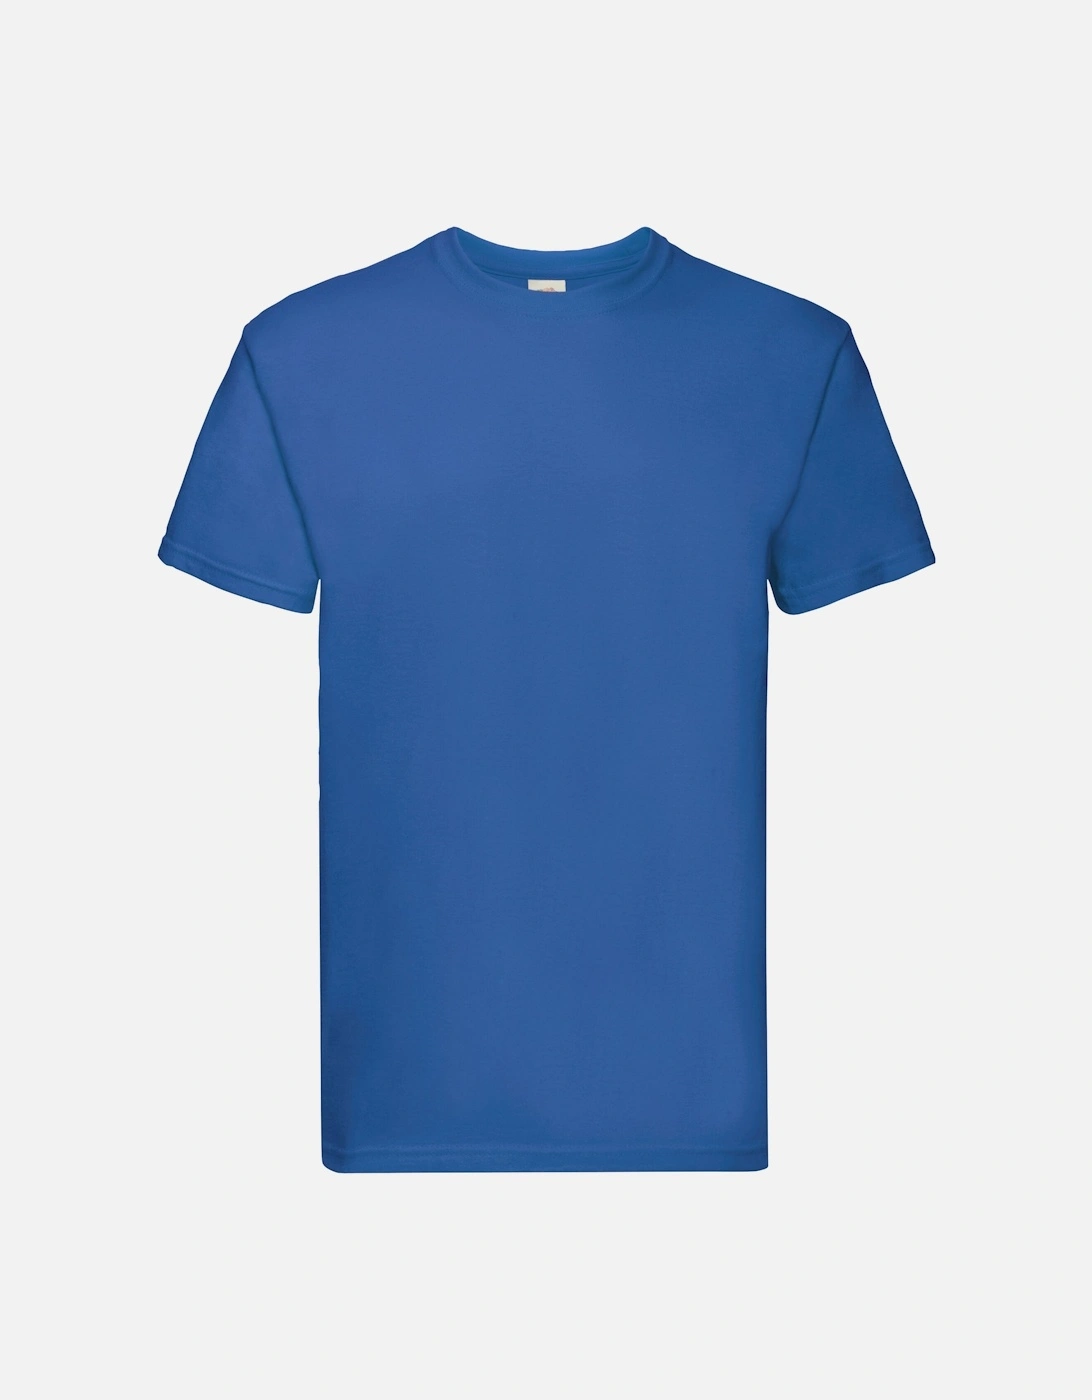 Unisex Adult Super Premium Plain T-Shirt, 4 of 3